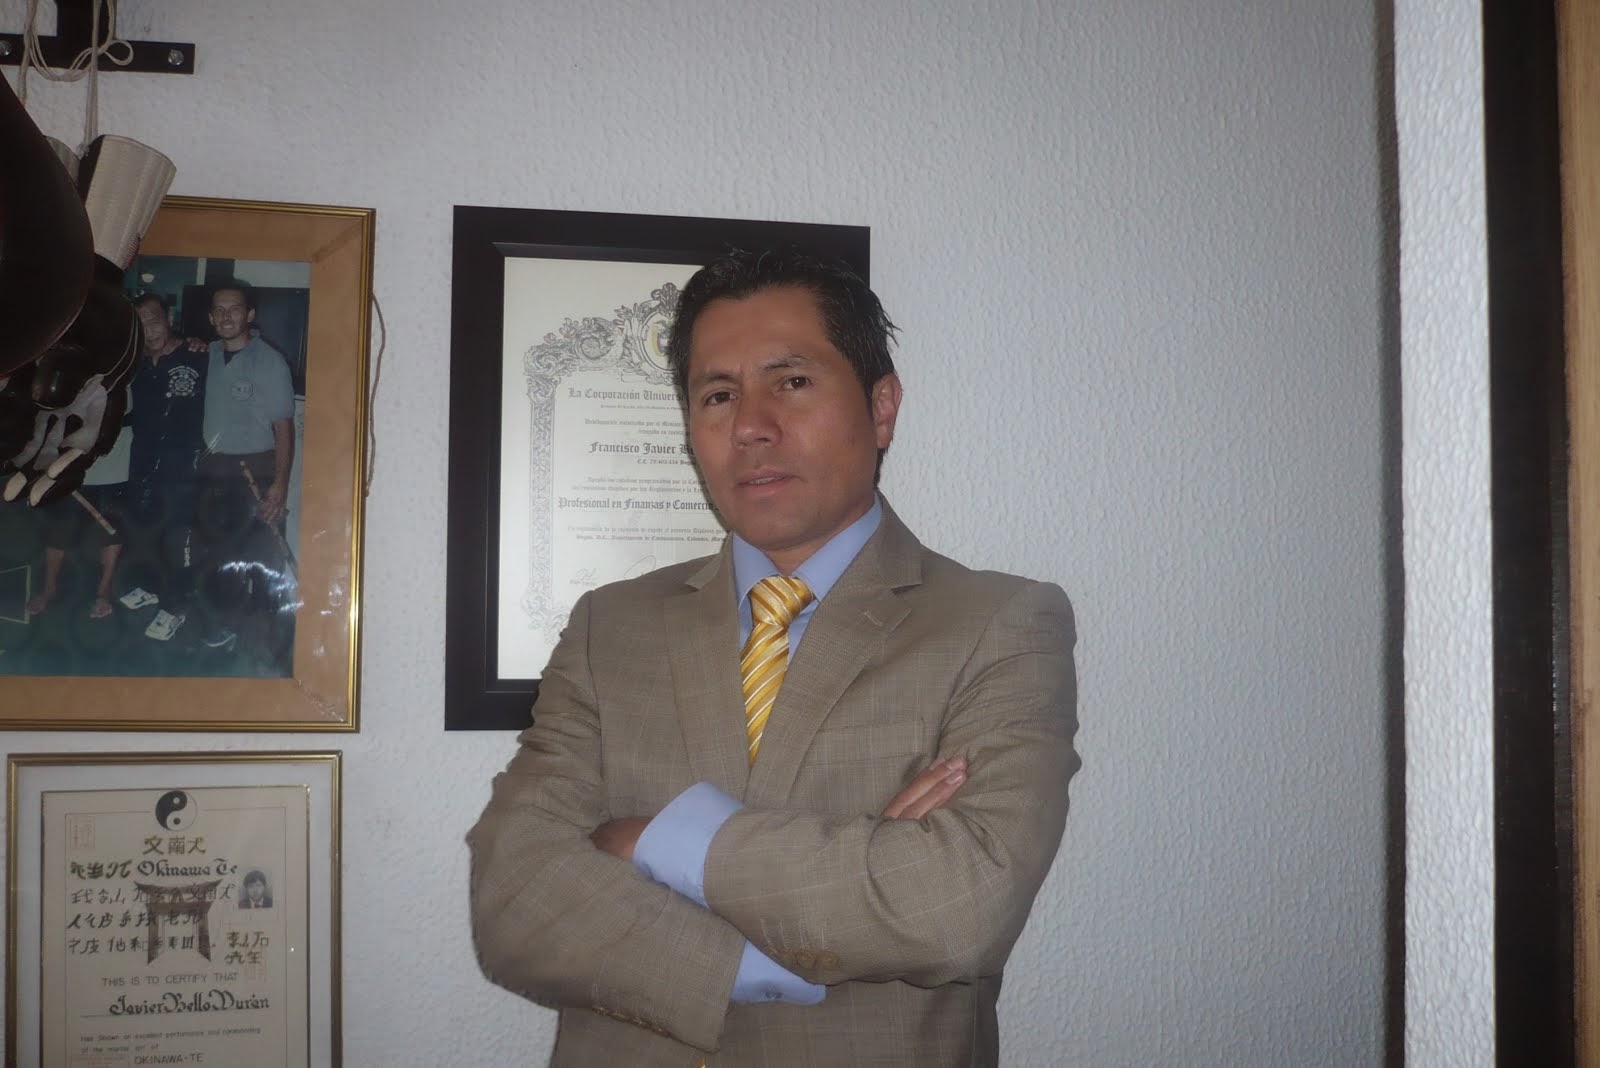 Javier Bello Durán